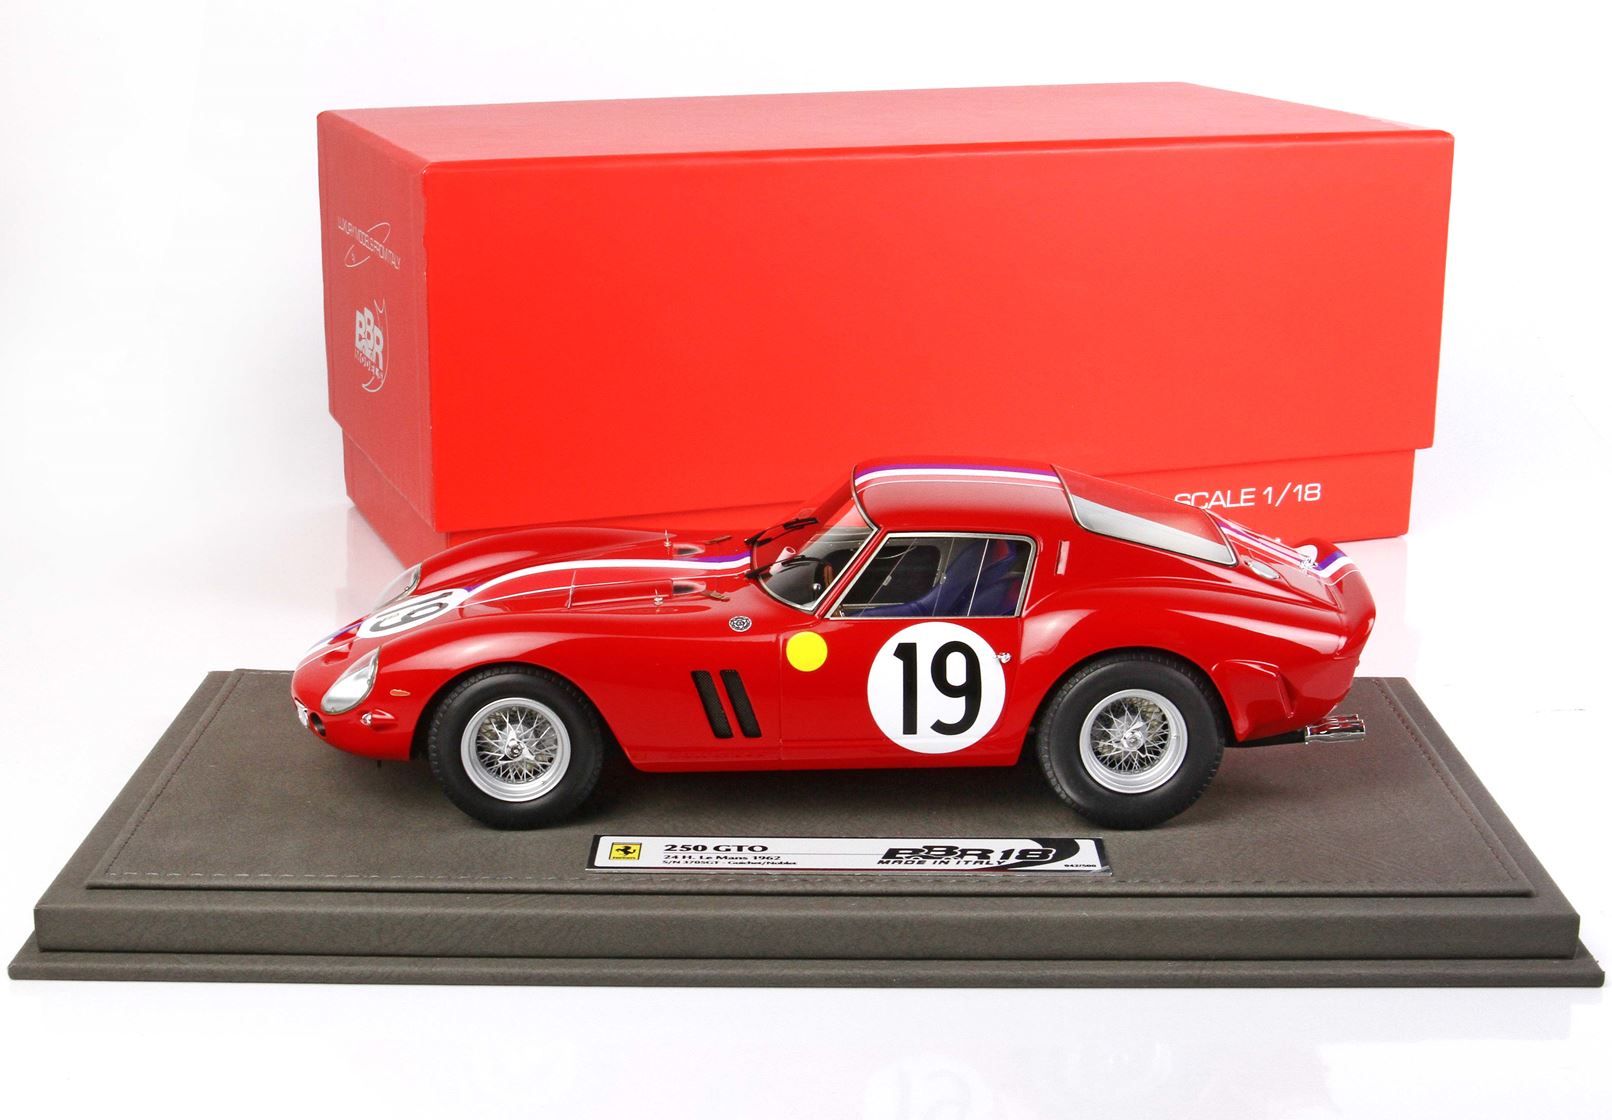 BBR Ferrari 250 GTO 1:18 scale